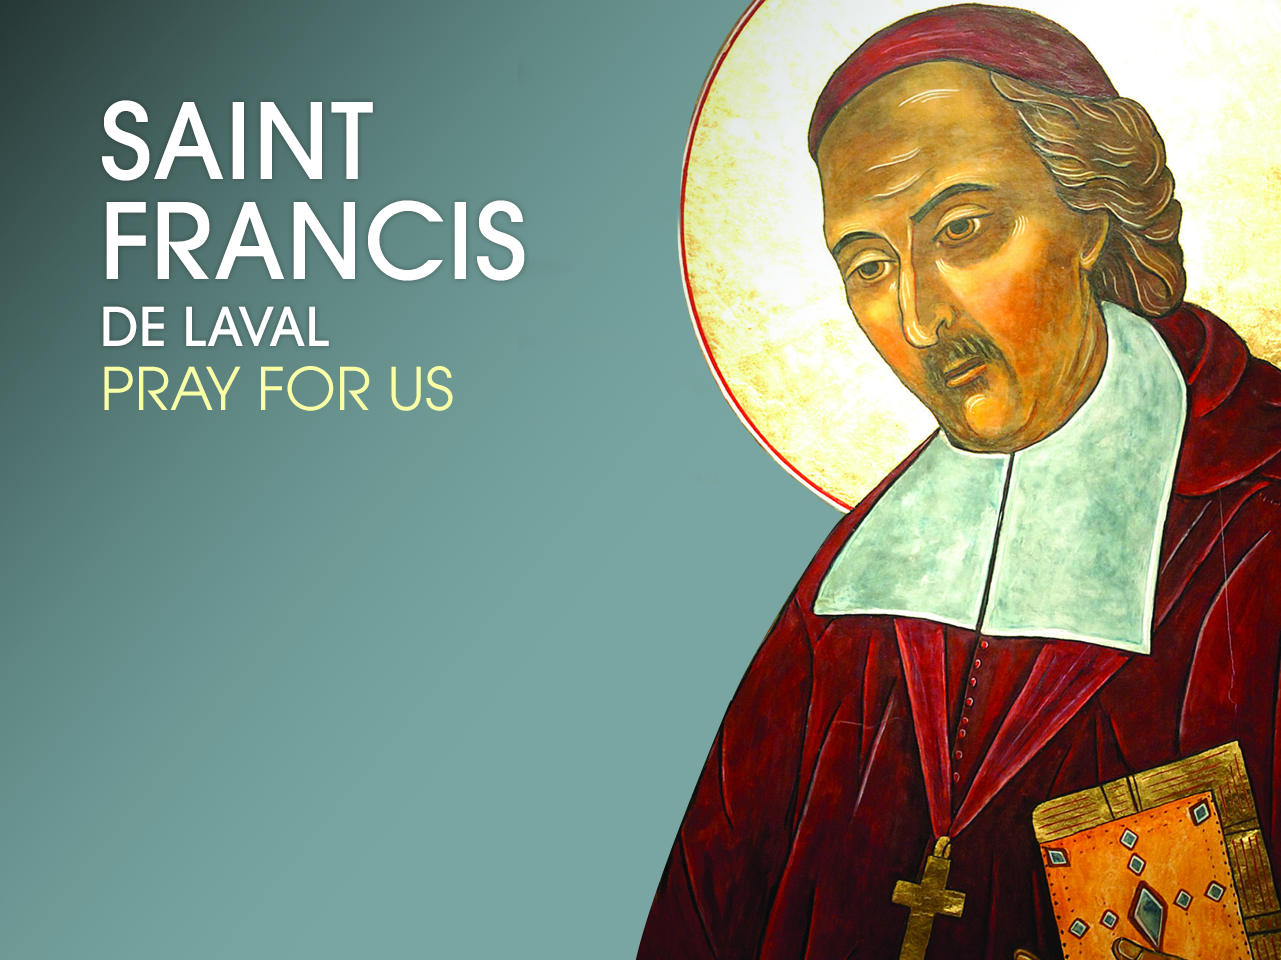 St. Francis de Laval